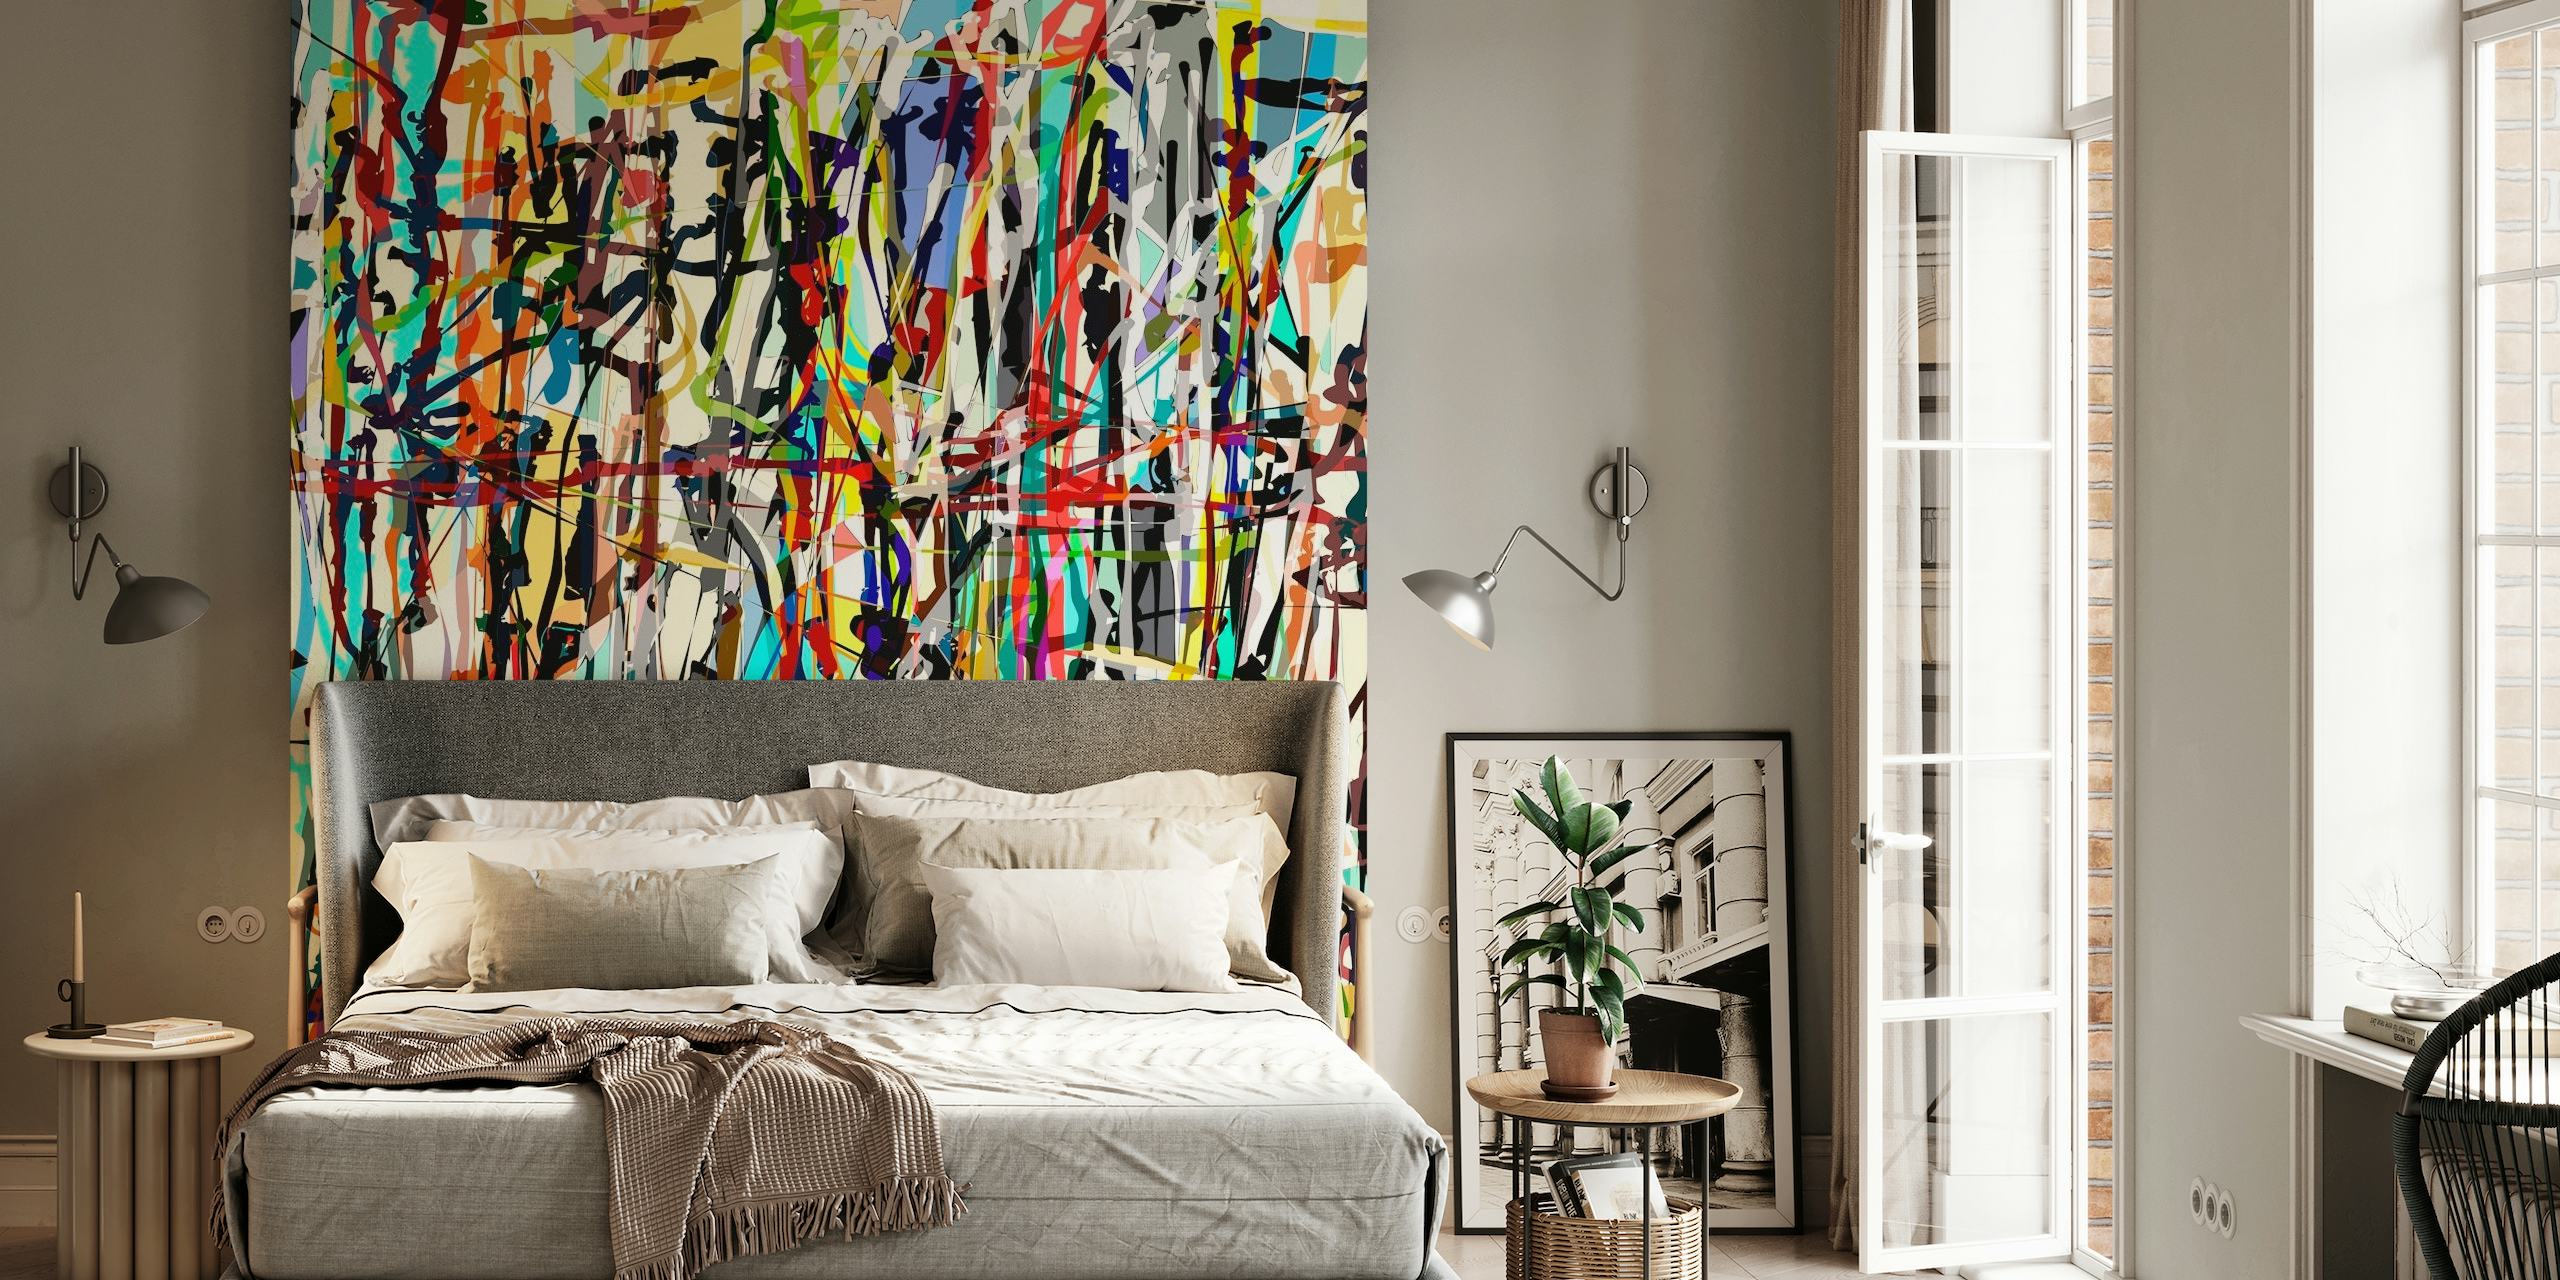 Abstrakt Pollock-inspirert veggmaleri med en fargerik blanding av livlige sprut og penselstrøk.